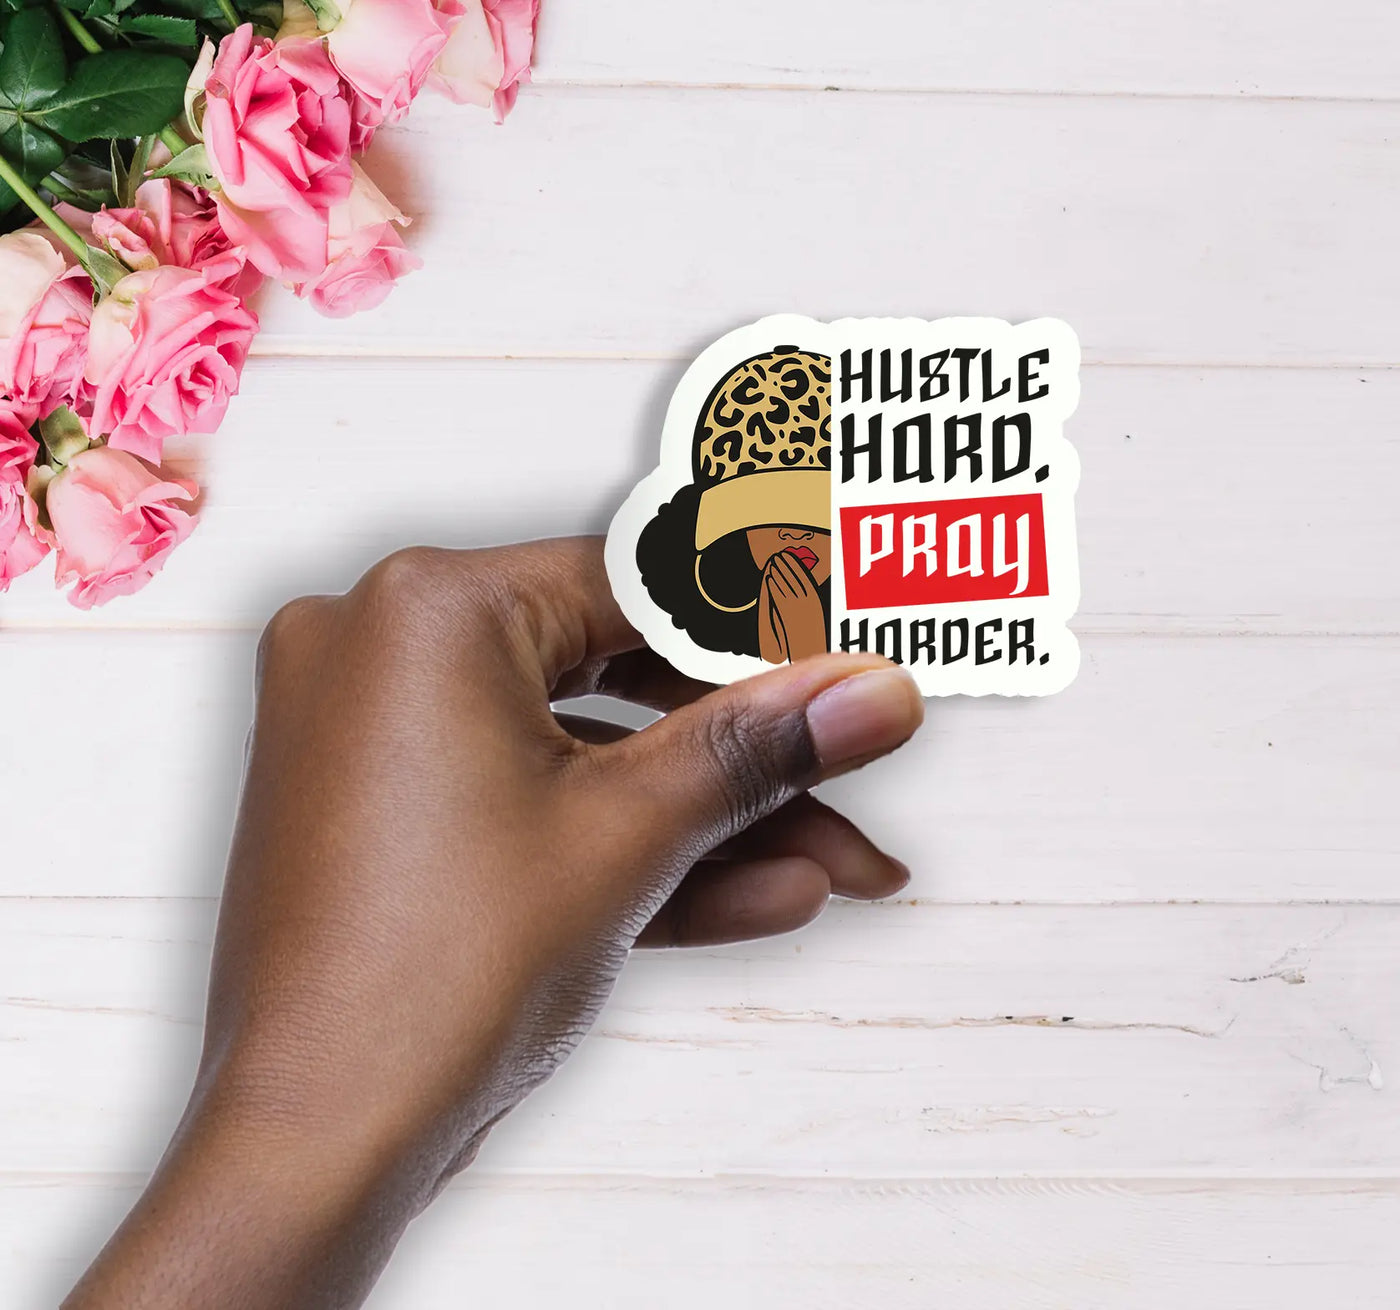 Hustle Hard, Pray Harder Handmade Vinyl Sticker - All Shades